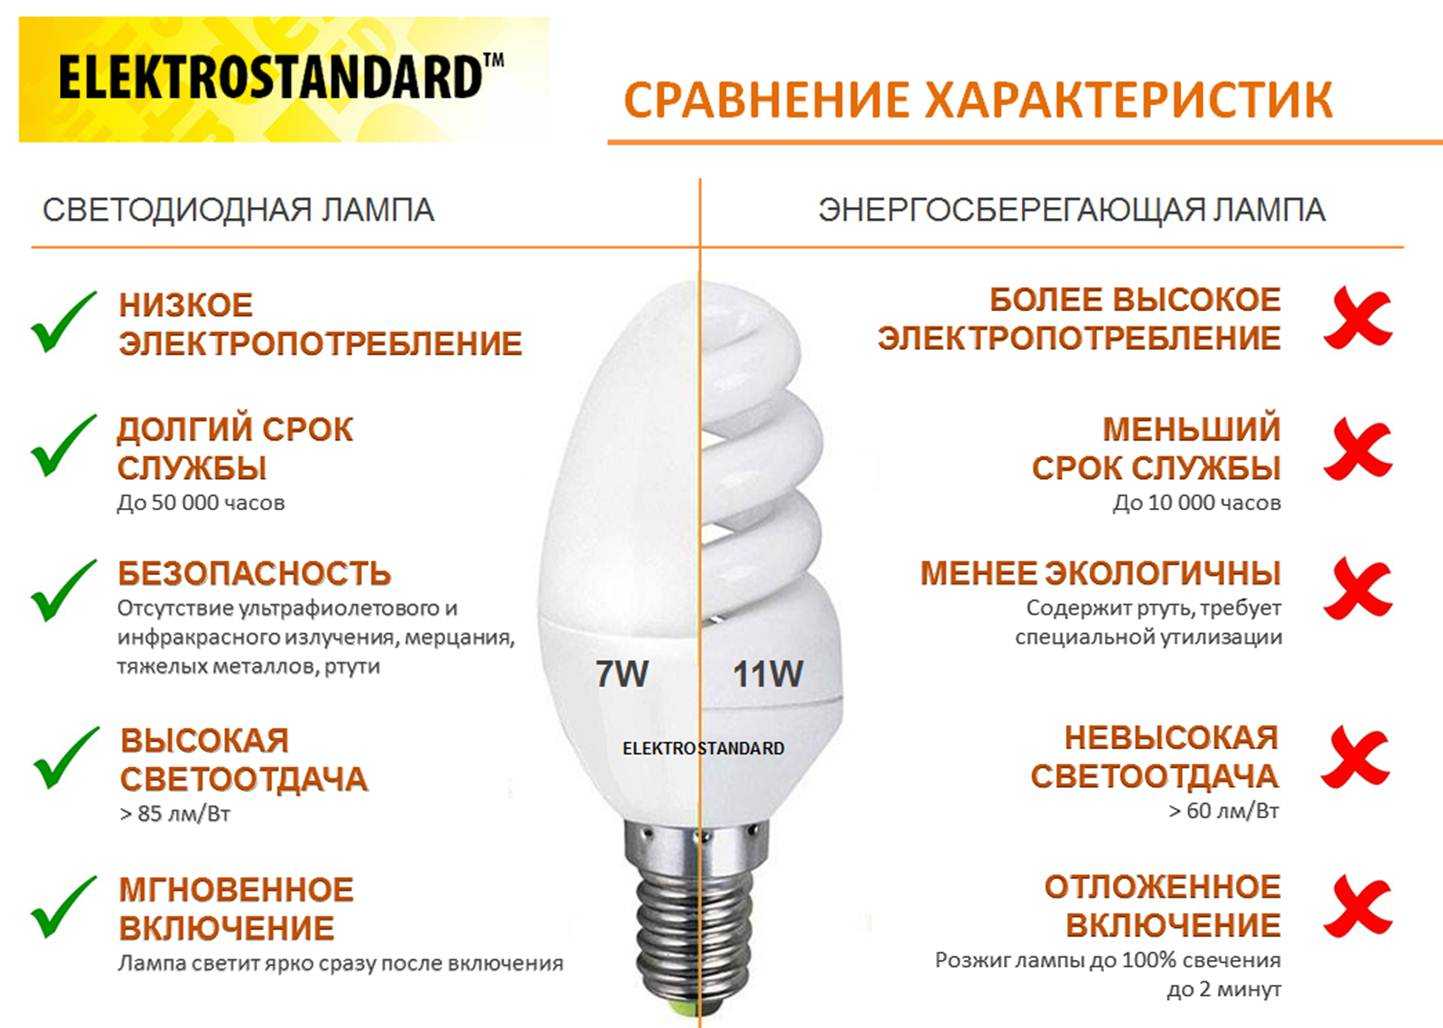 Светодиодные светильники (led): виды, особенности, варианты оформления